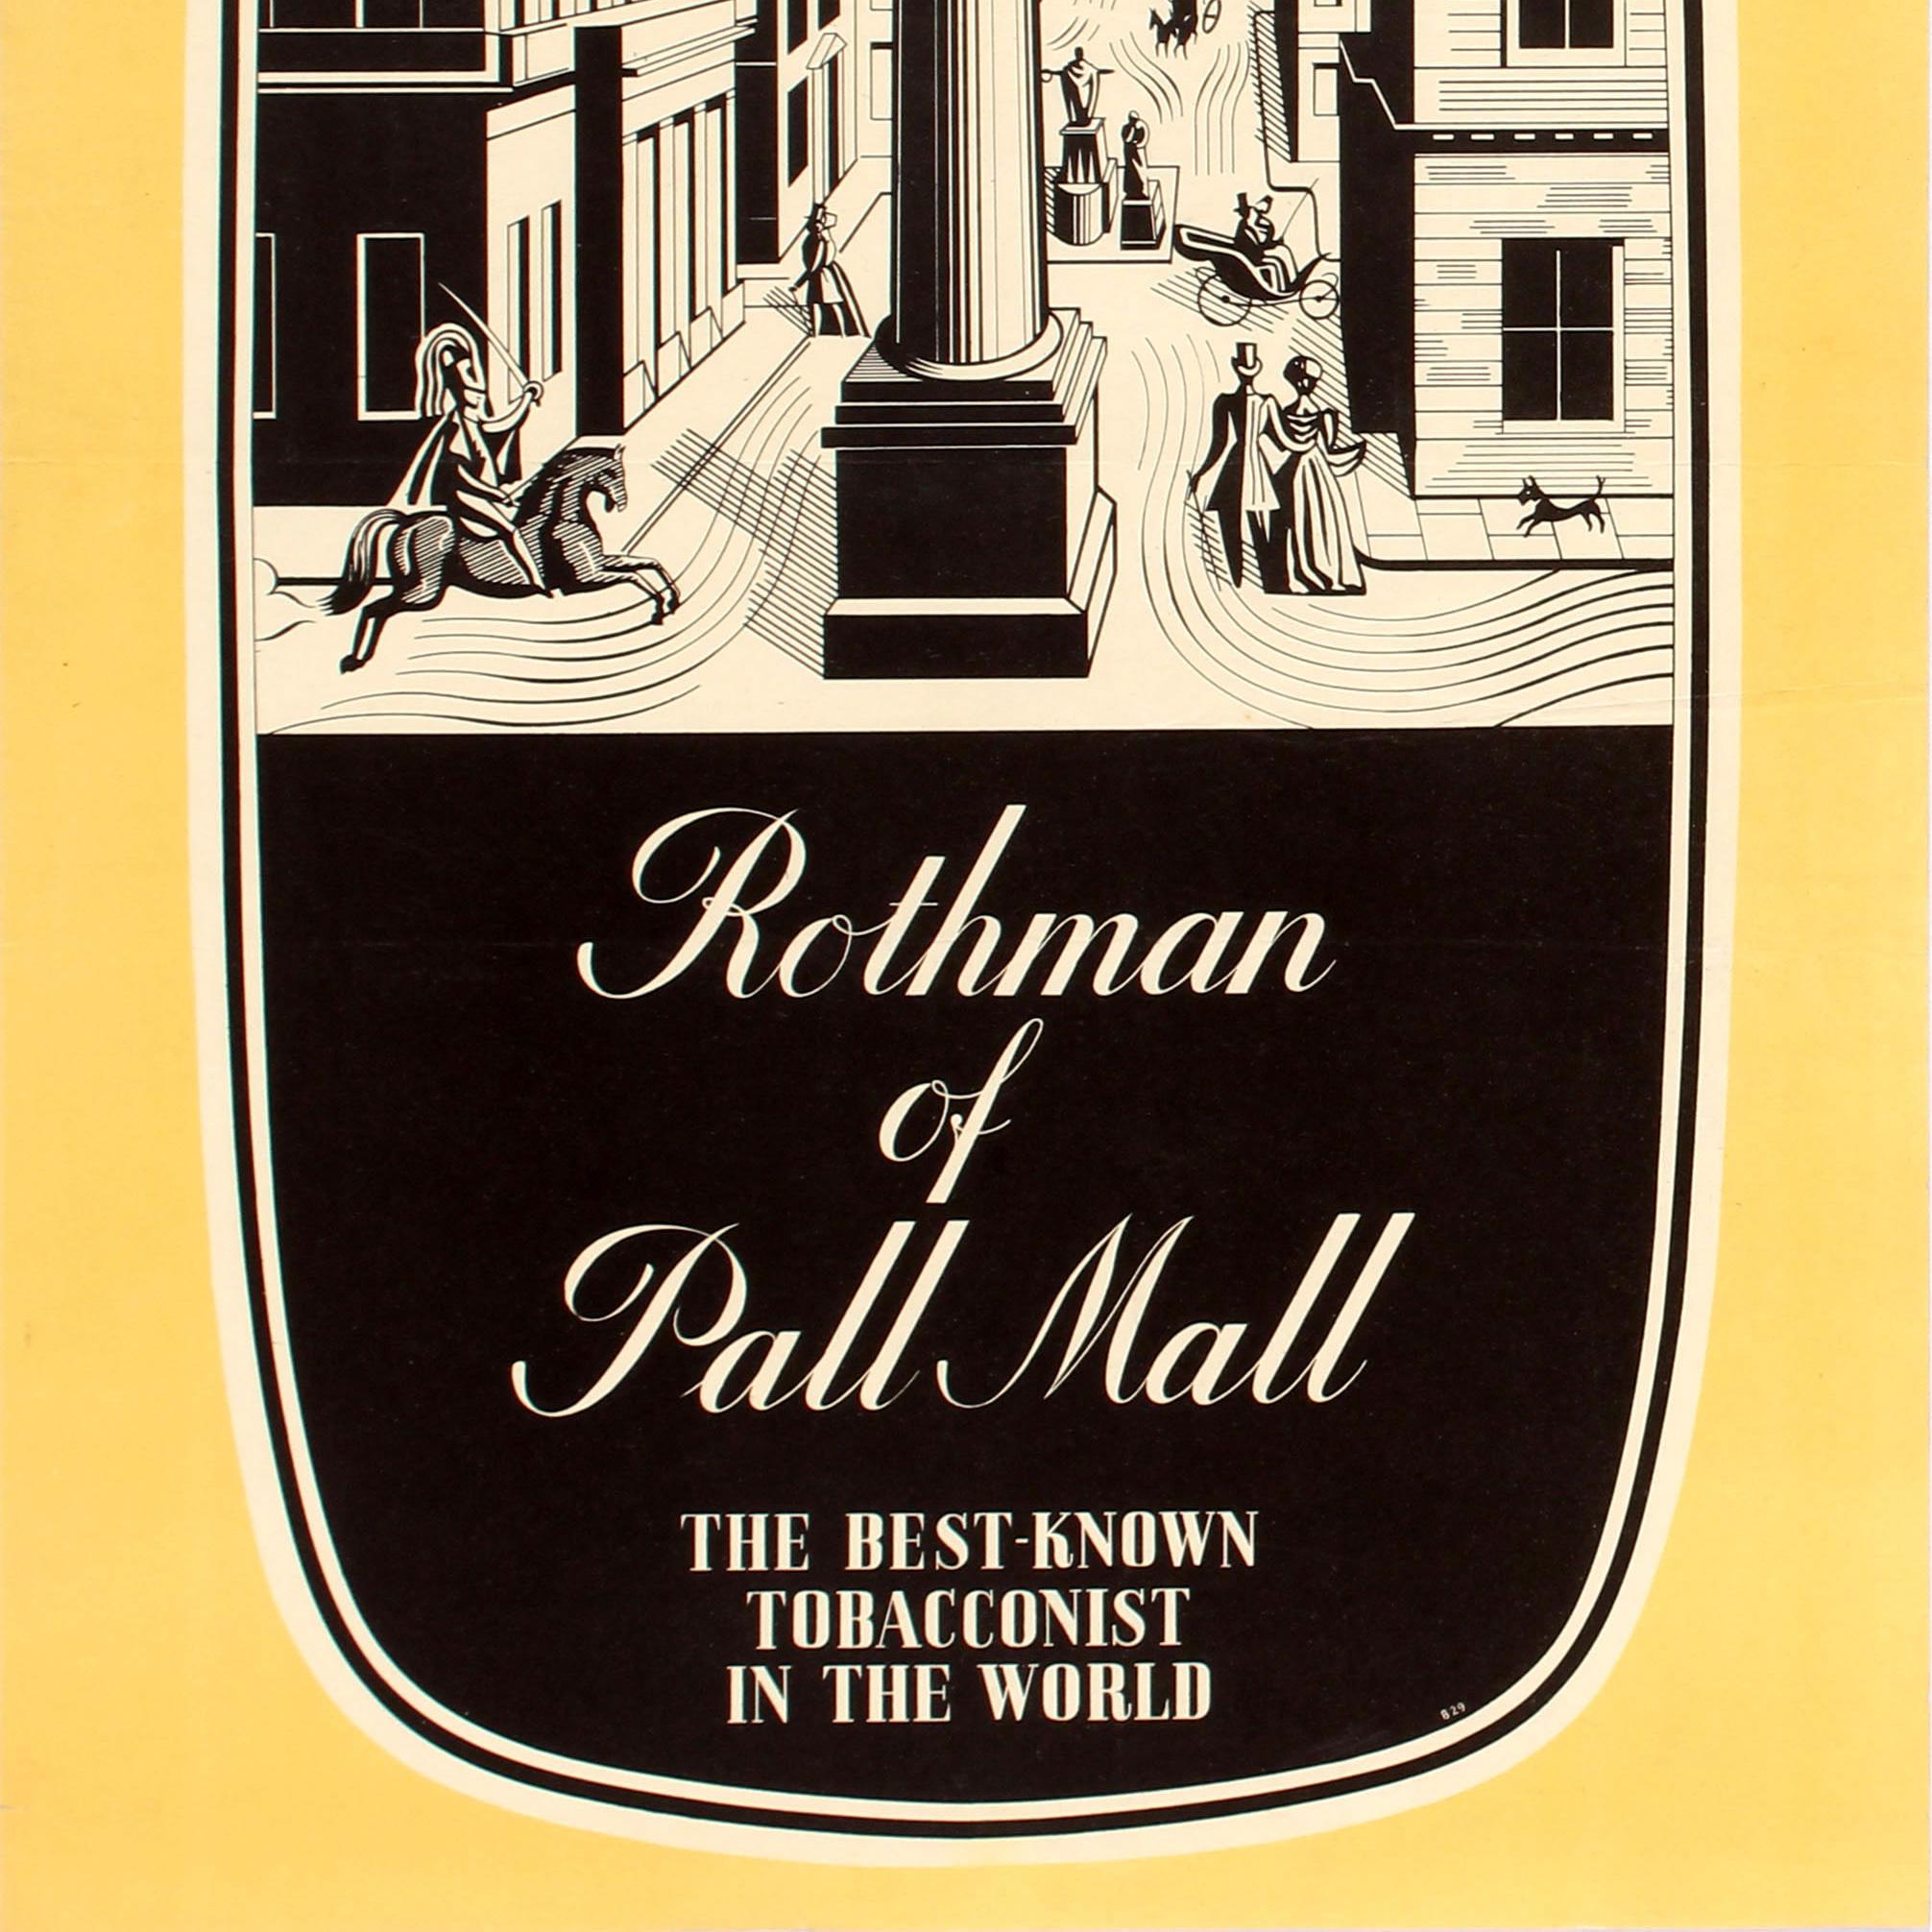 pall mall cigarettes origin